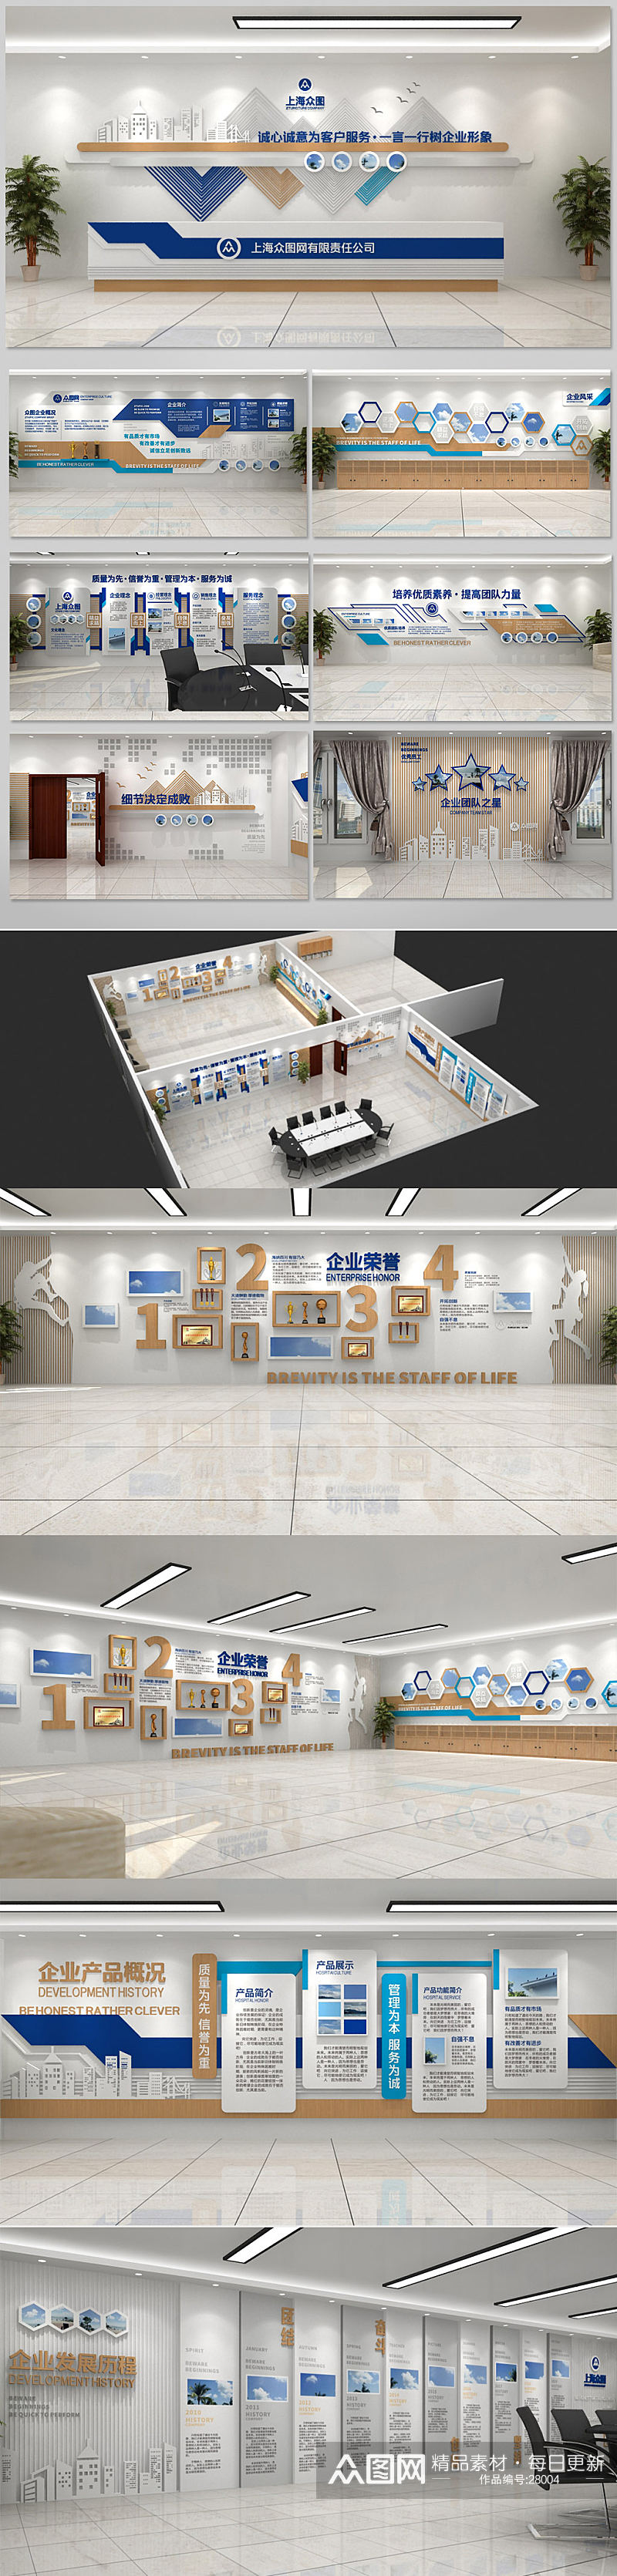 木纹现代简约企业展厅展馆文化墙设计图片 科技展馆展厅素材